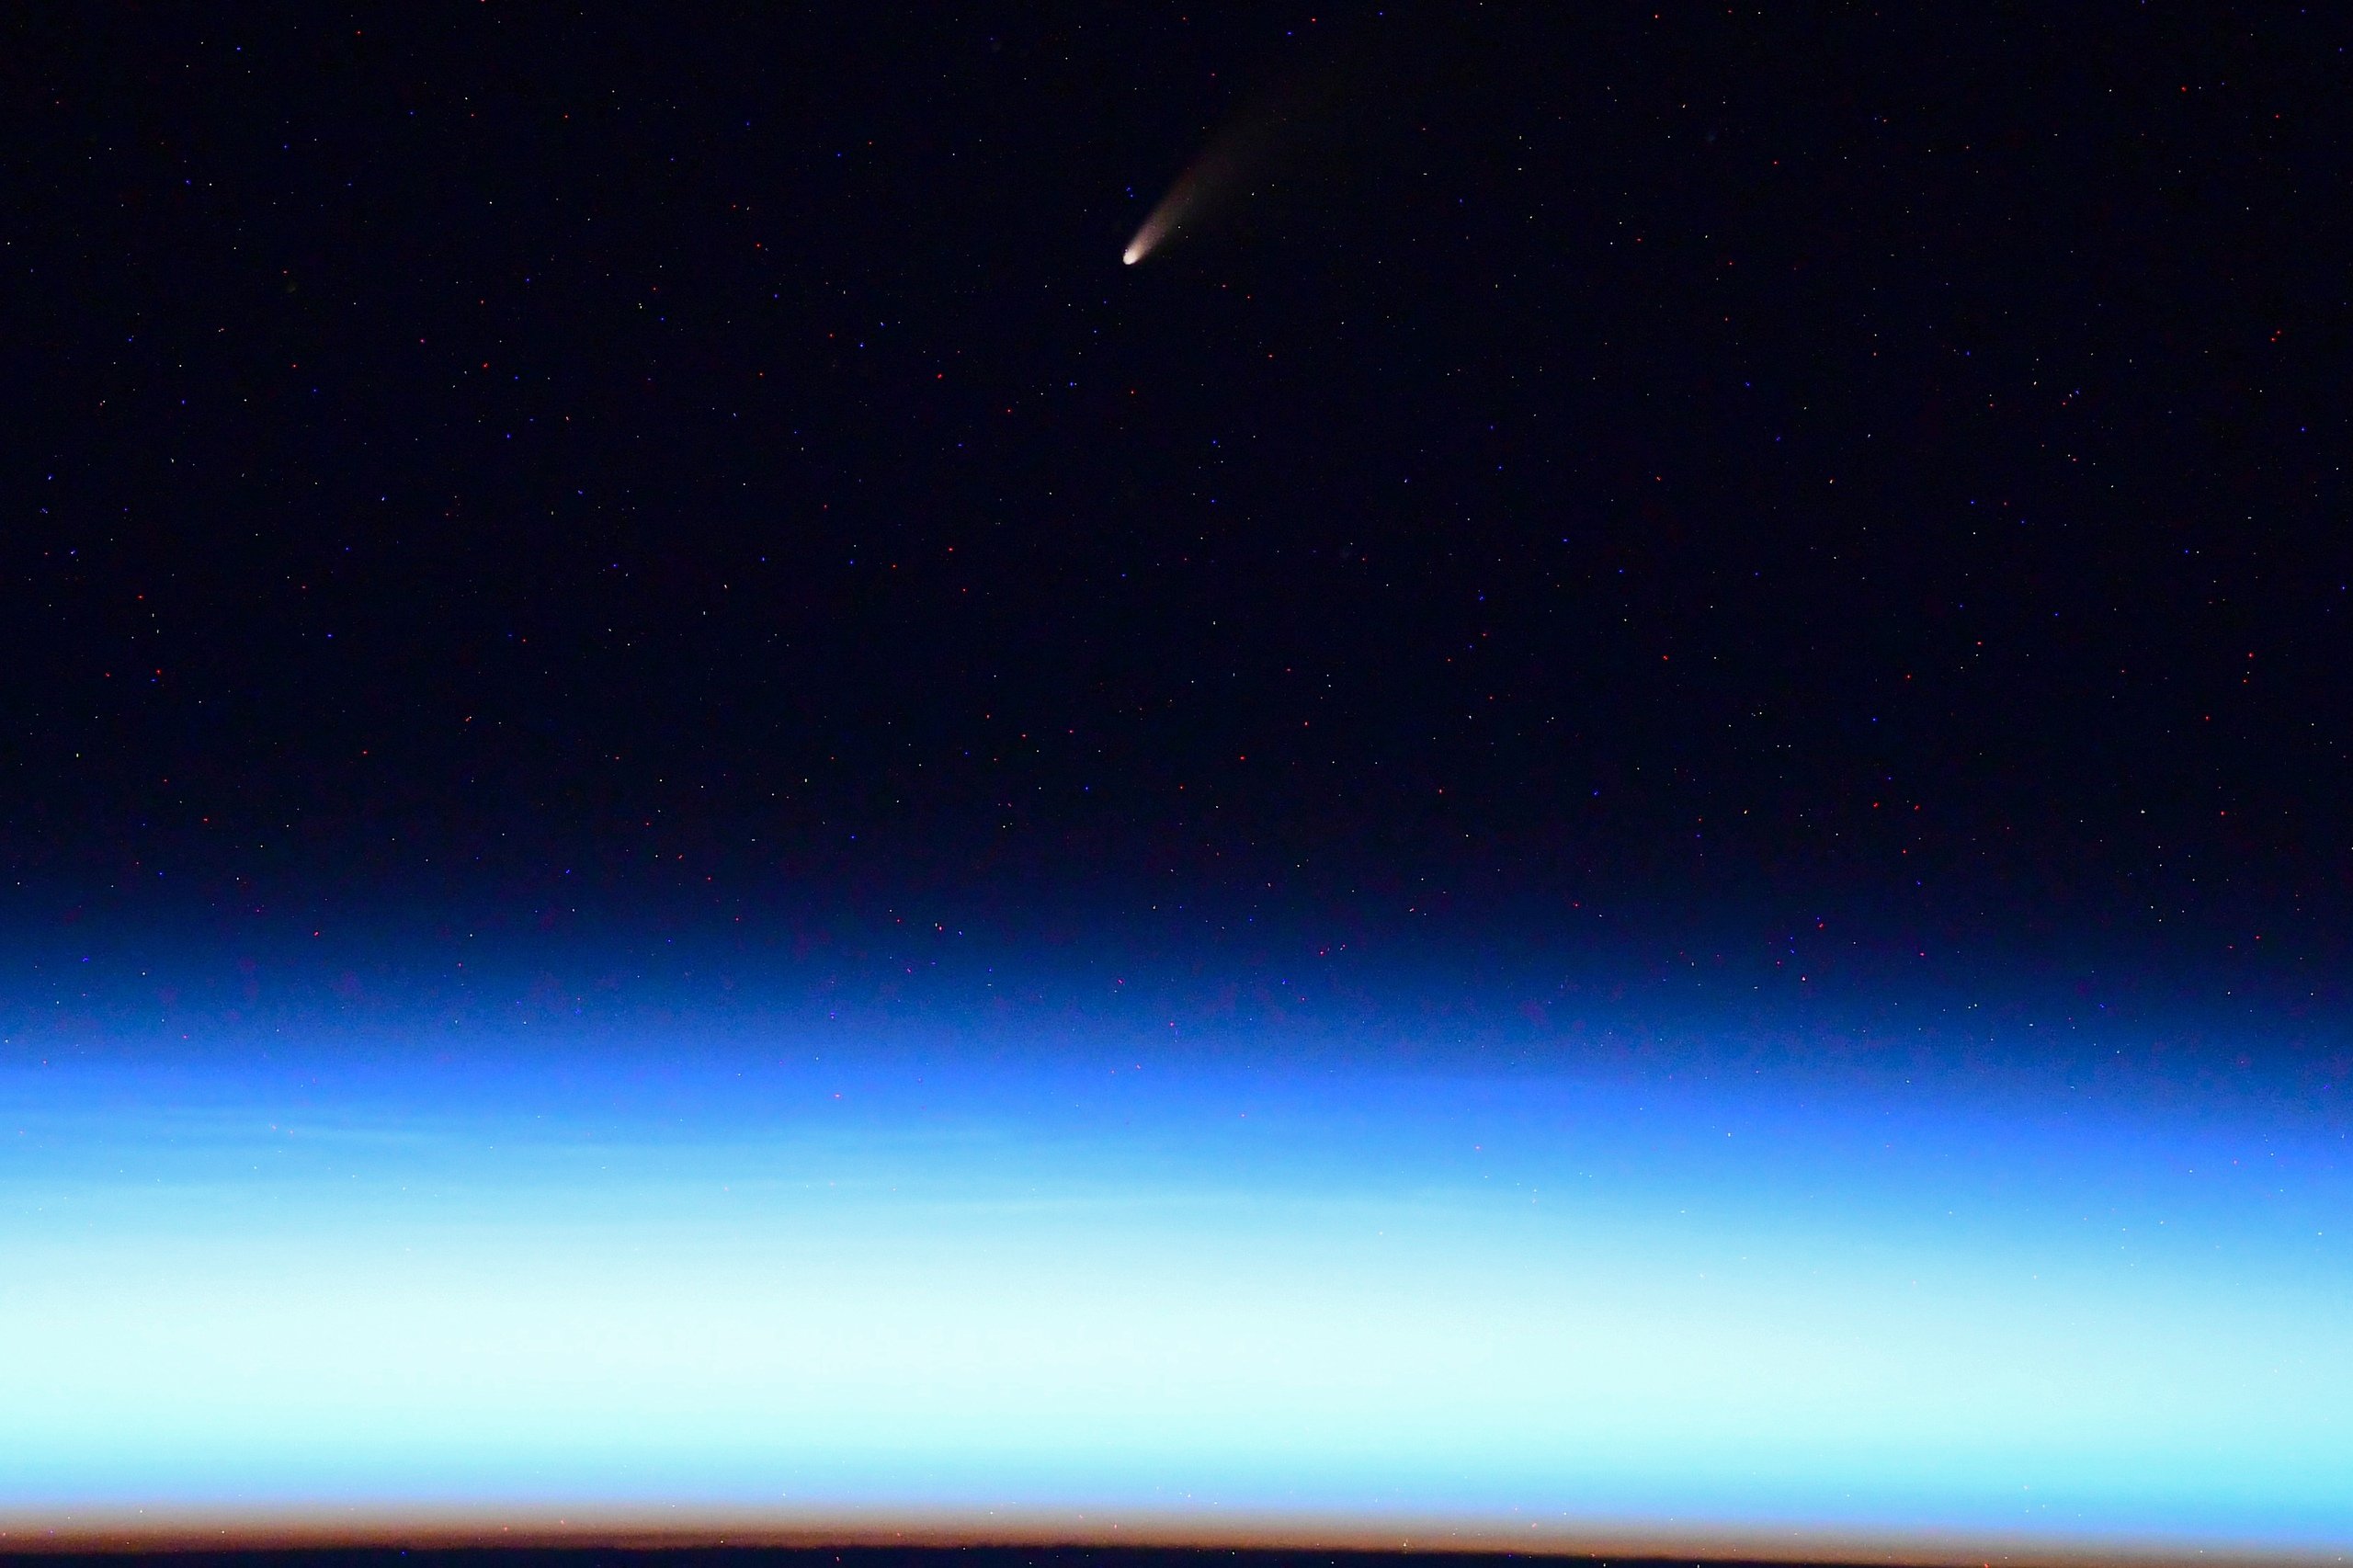 Над Землей пролетит комета. Скриншот: Иван Вагнер в Твиттер